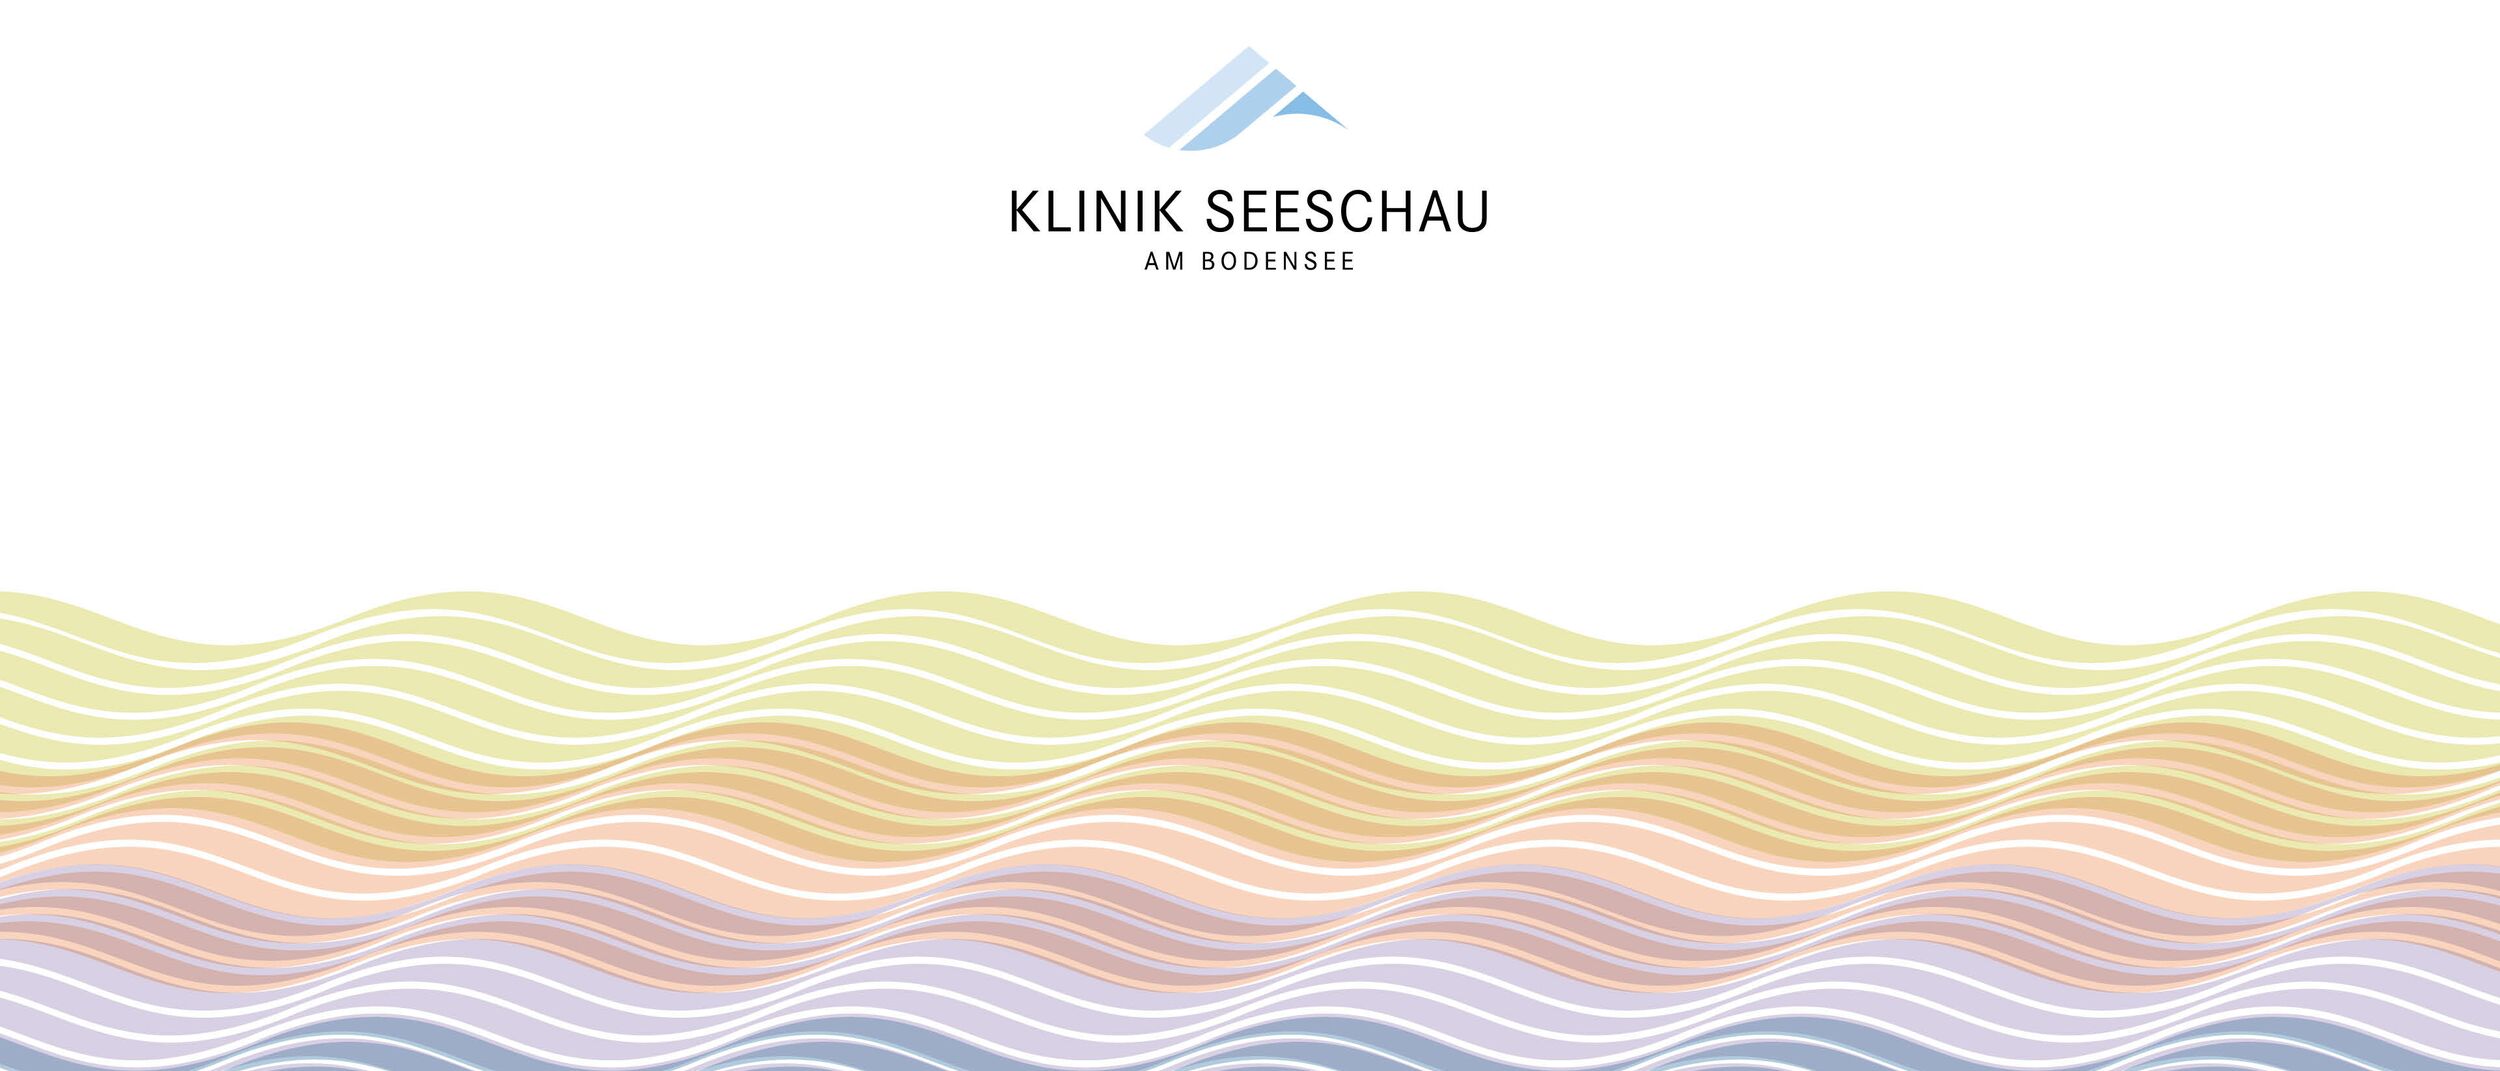 Klinik Seeschau - Logo Tektonik